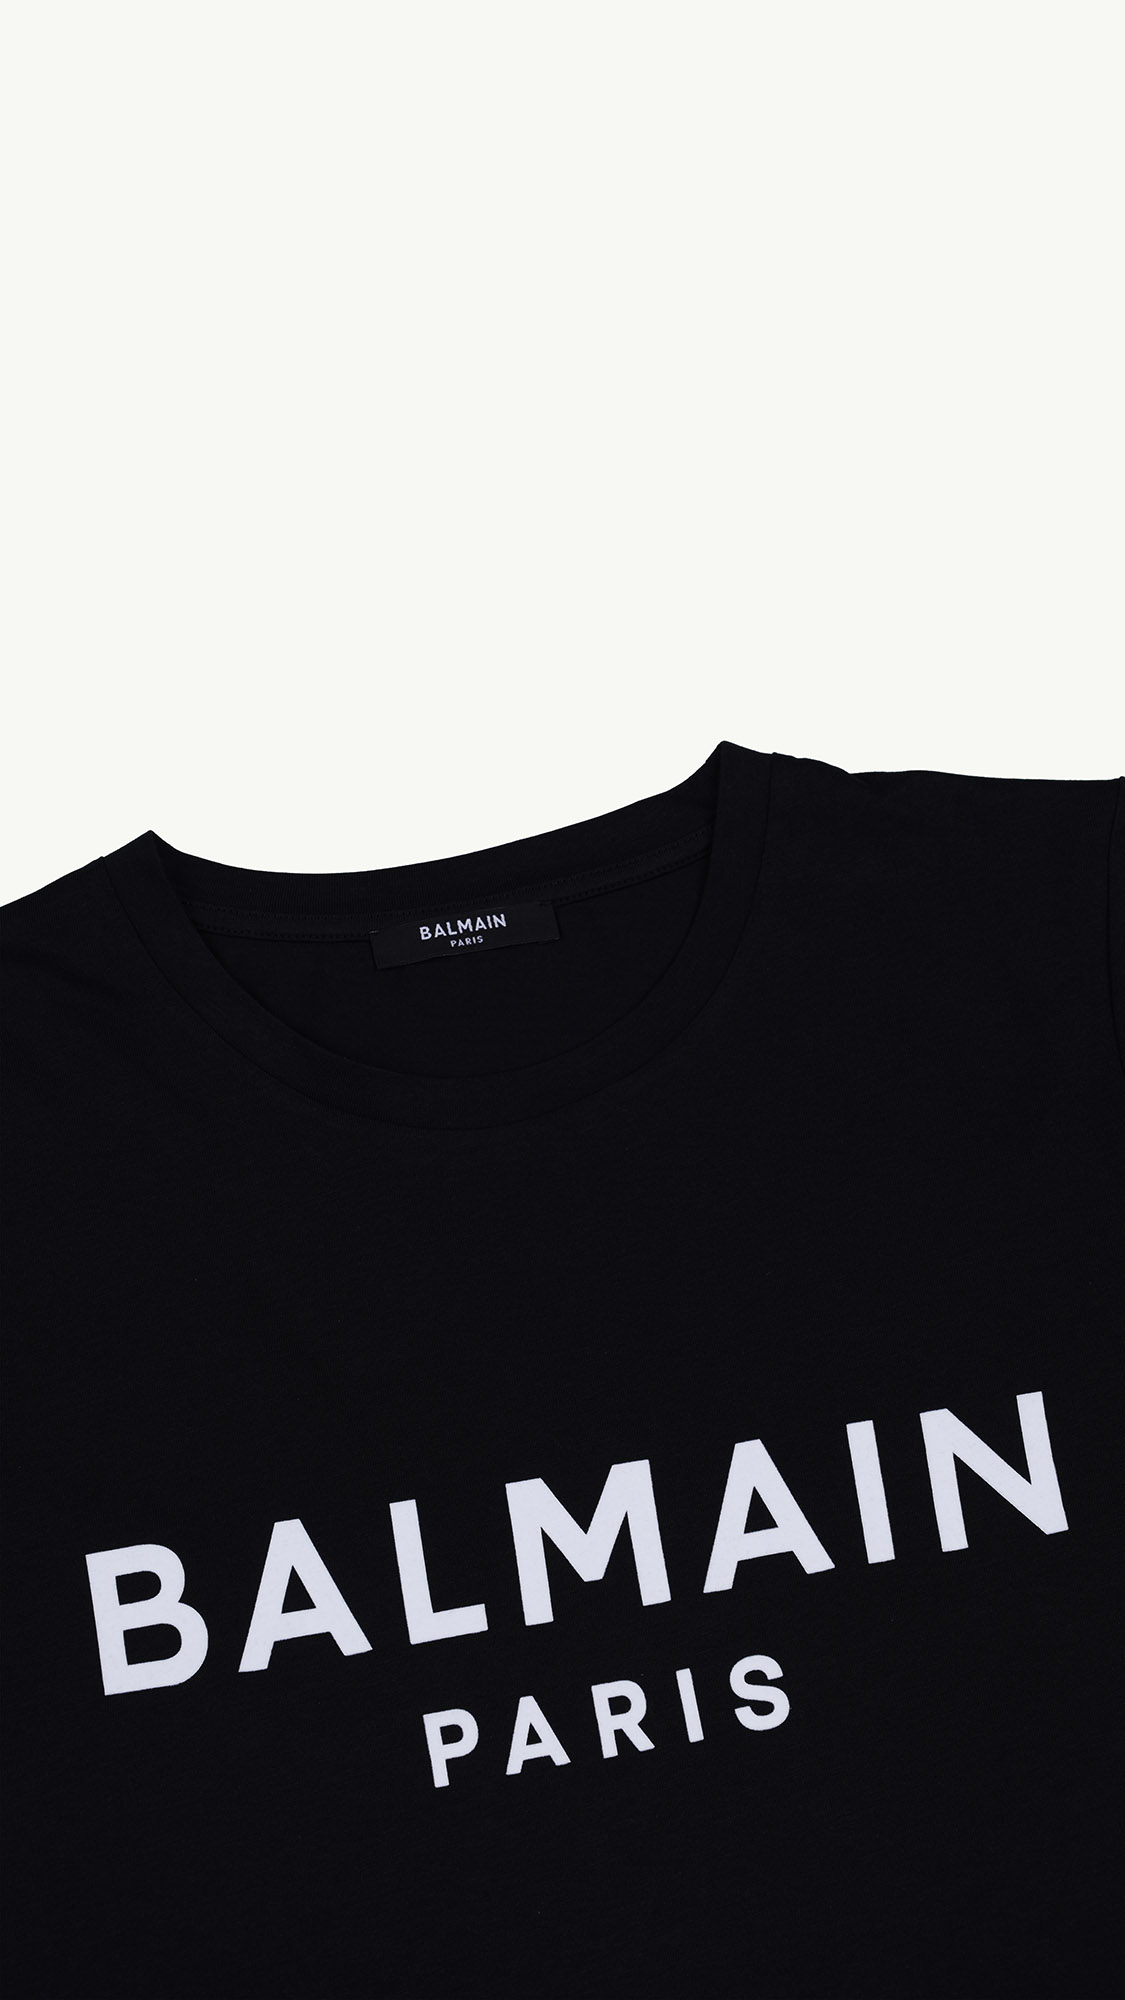 BALMAIN Women Balmain Paris Flocked Suede Logo T-Shirt in Black/White 2